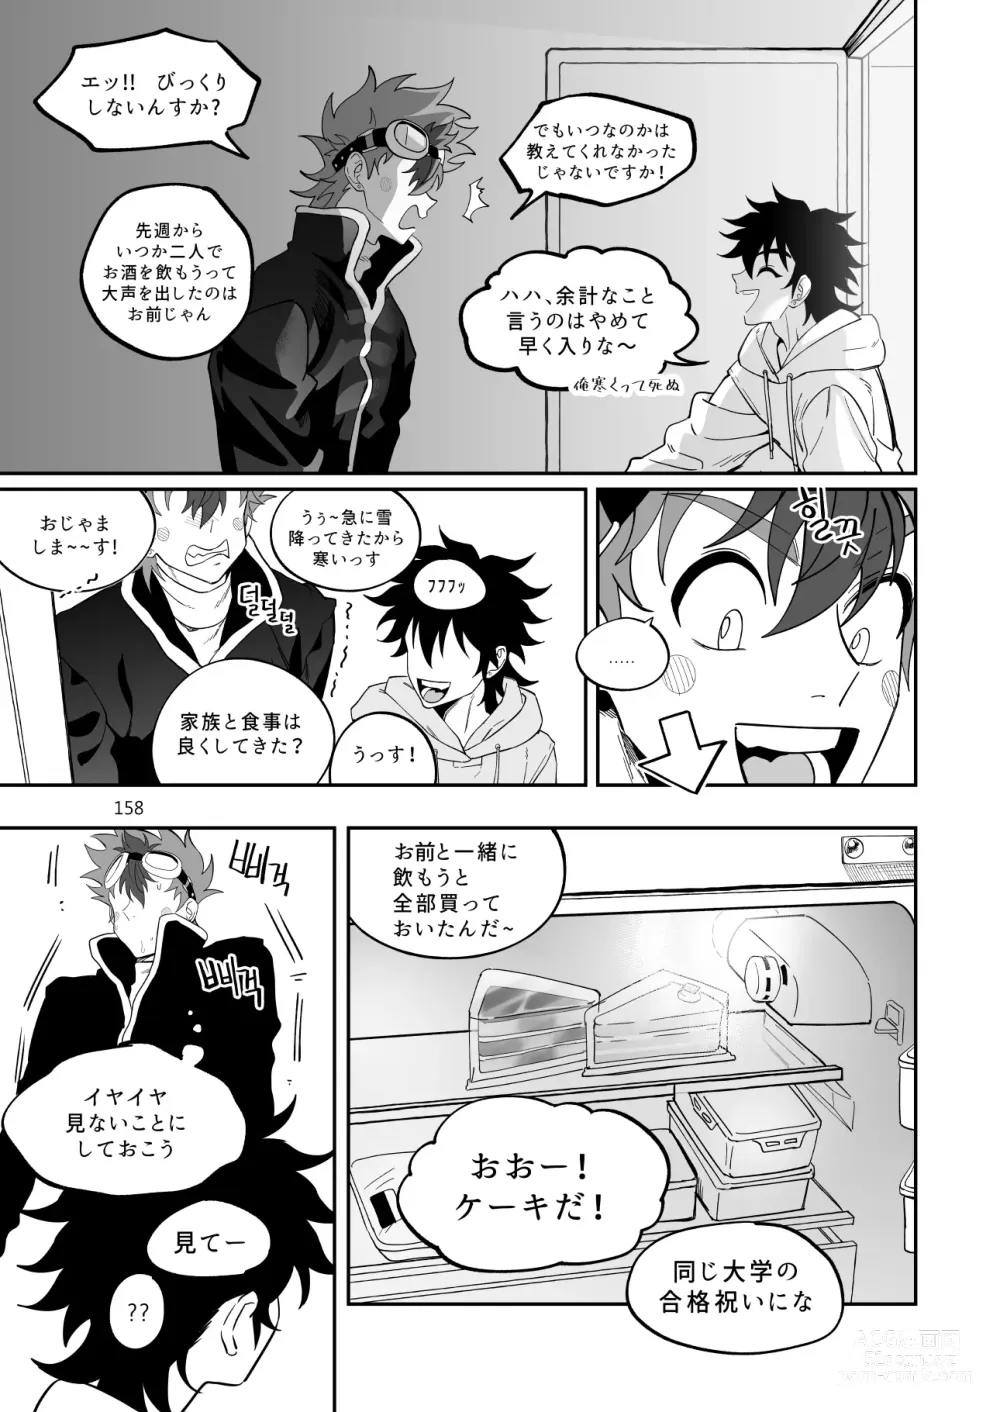 Page 159 of doujinshi Final Countdown